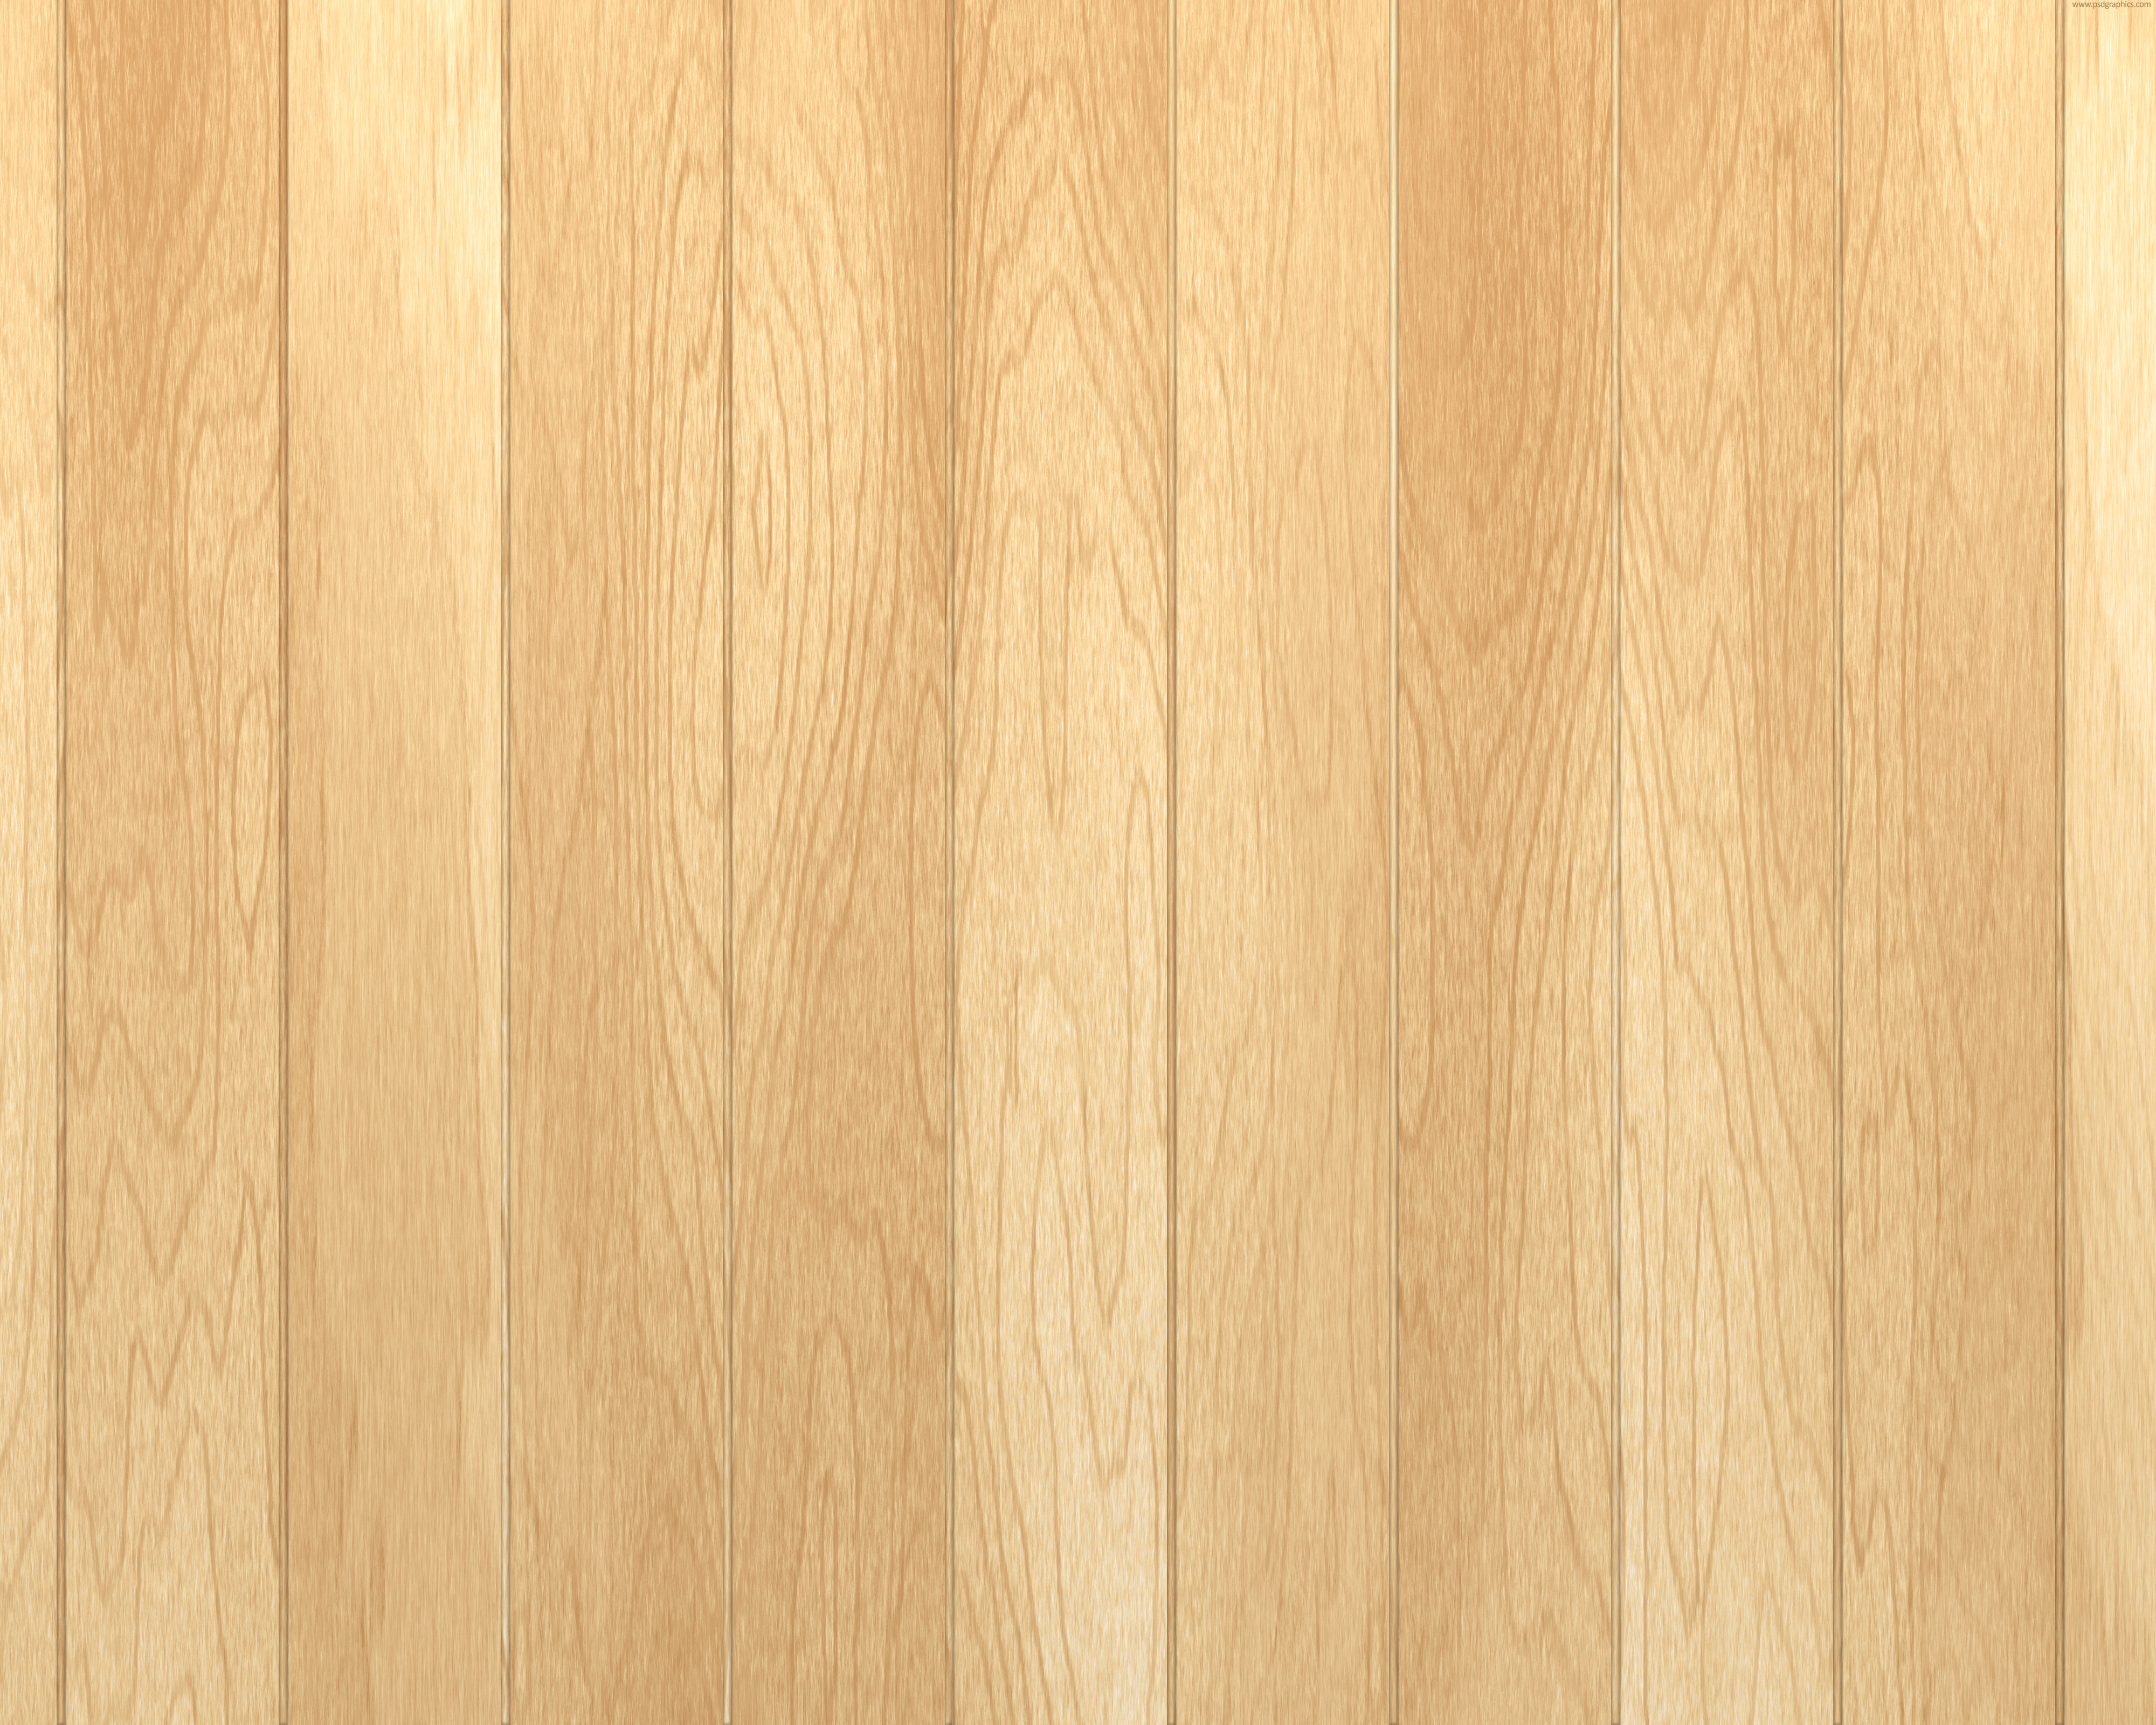 carta da parati per pavimenti,legna,legno duro,pavimento in legno,pavimentazione,color legno